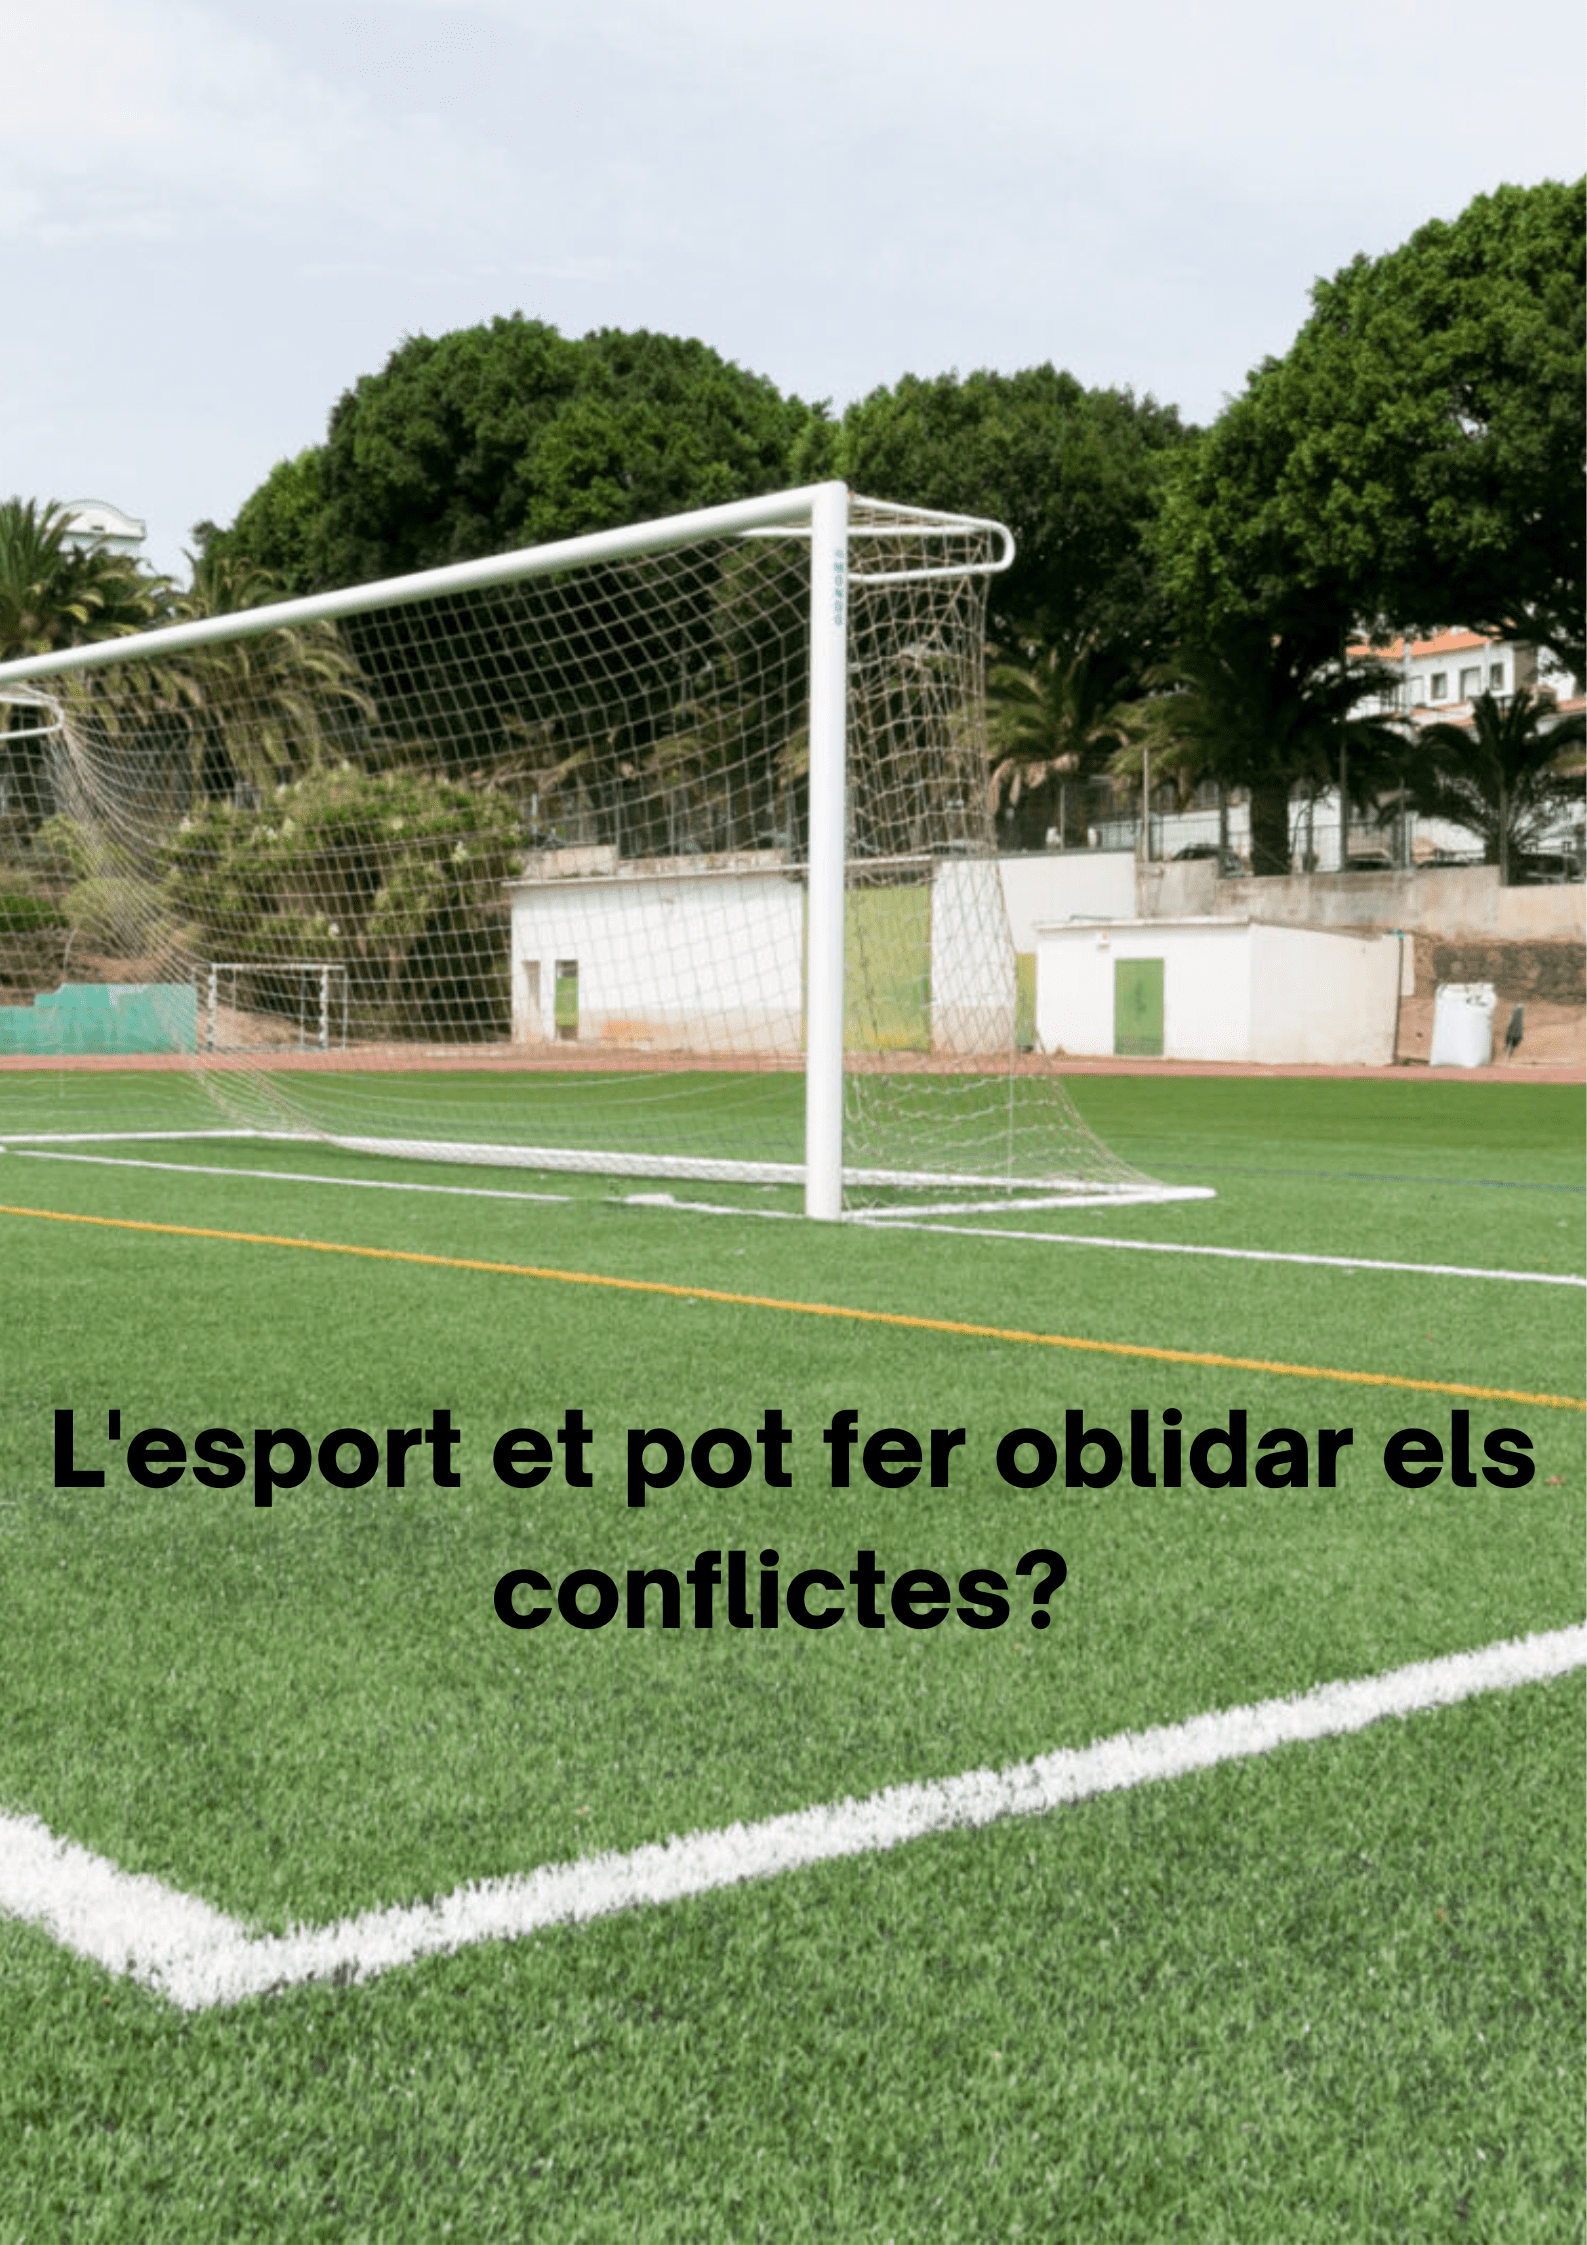 El futbol et pot fer oblidar els conflictes (2)